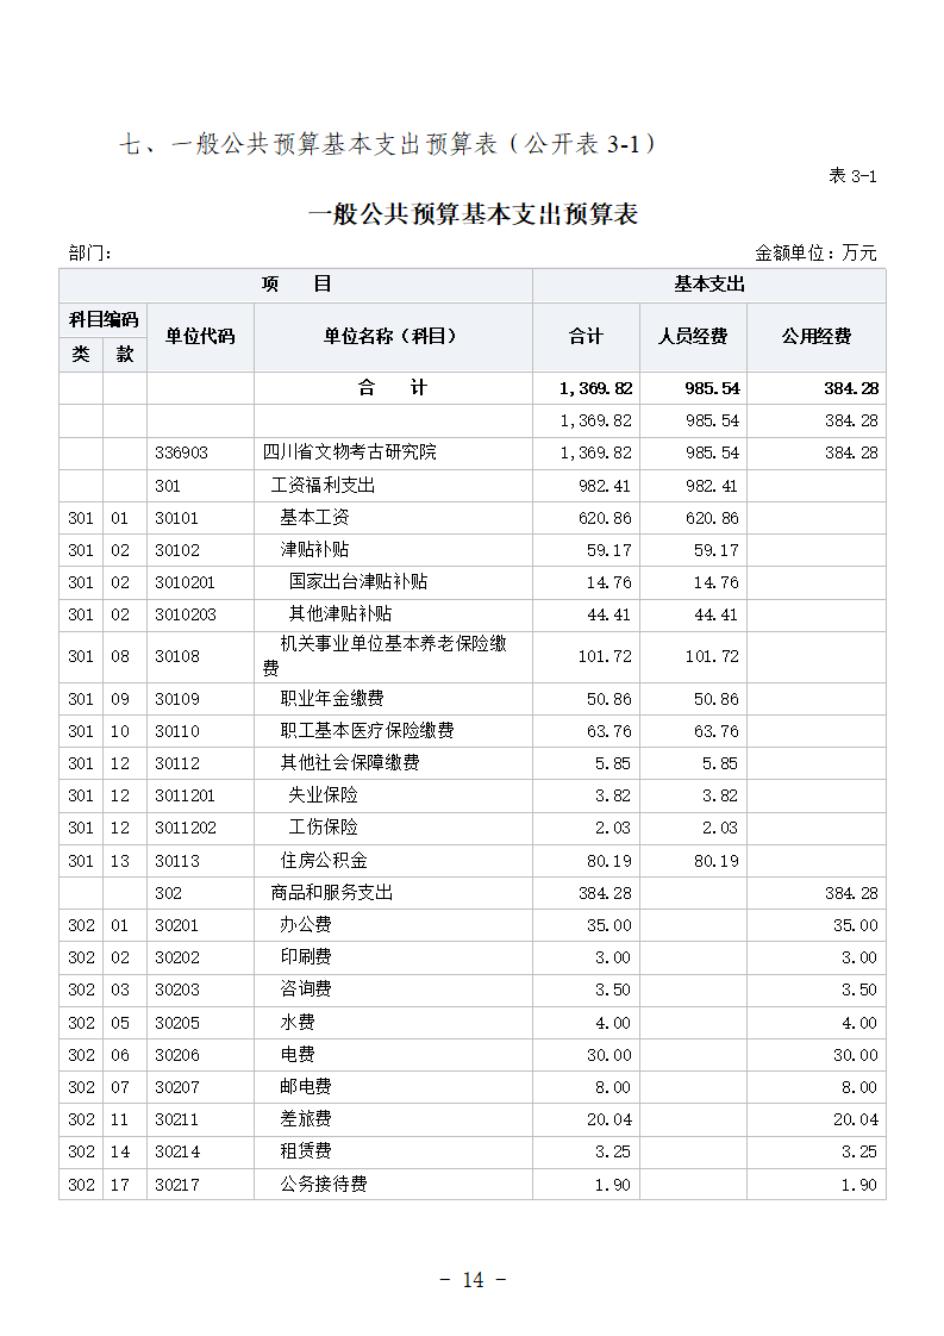 省考古院2024年四川省省级单位预算公开模板(3.14)_15.jpg